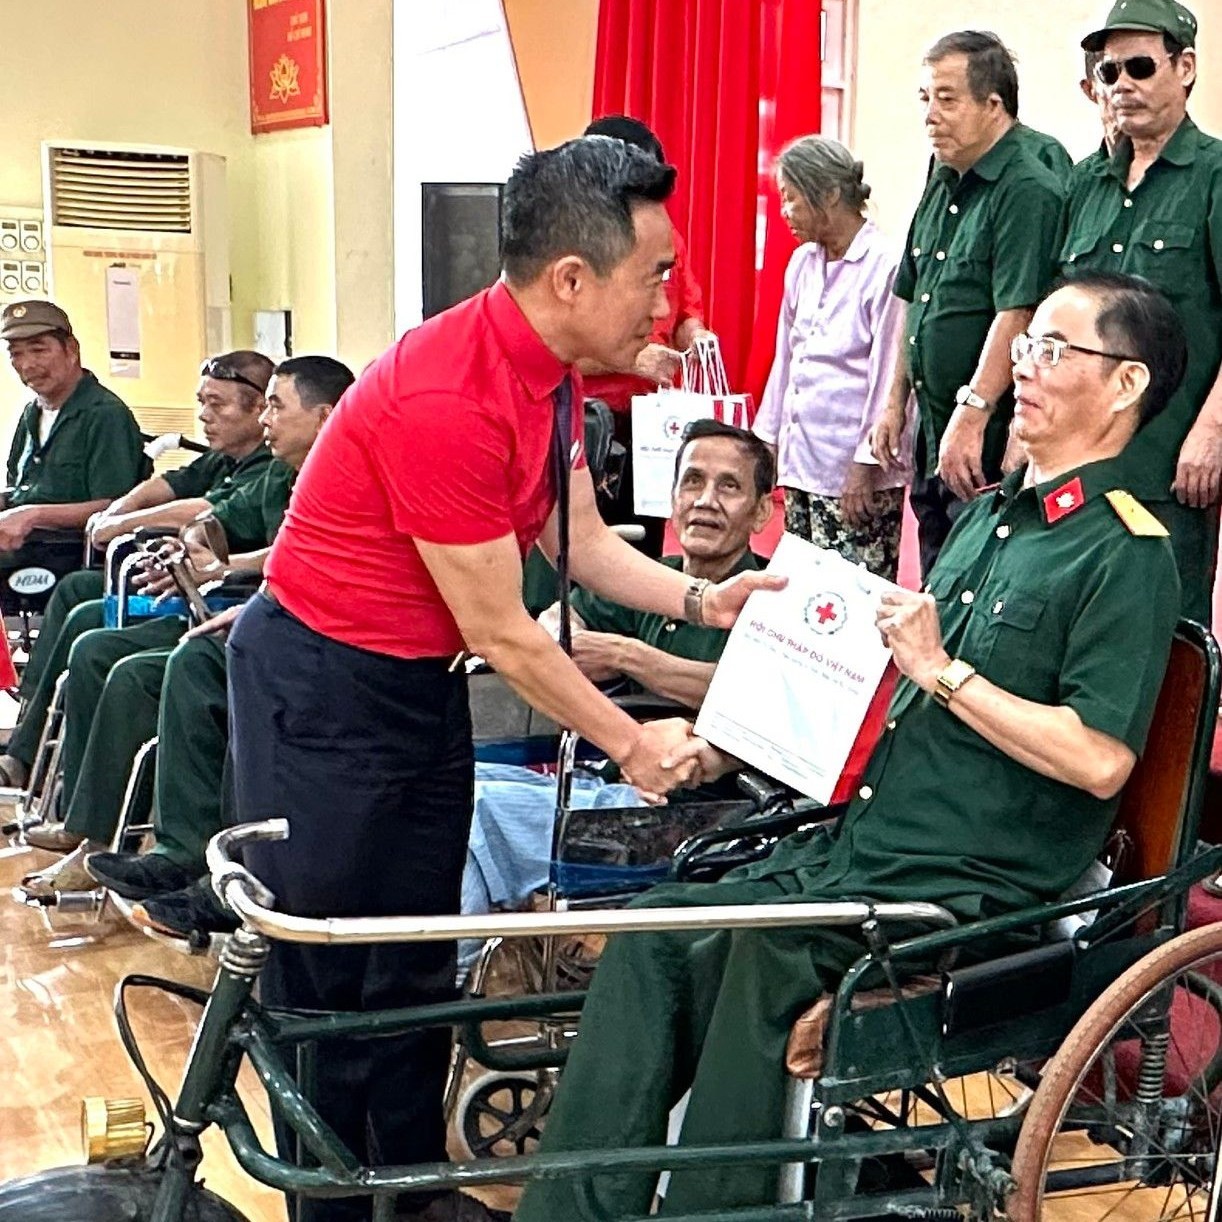 trao quà tại Trung tâm điều dưỡng người có công tỉnh Phú Thọ